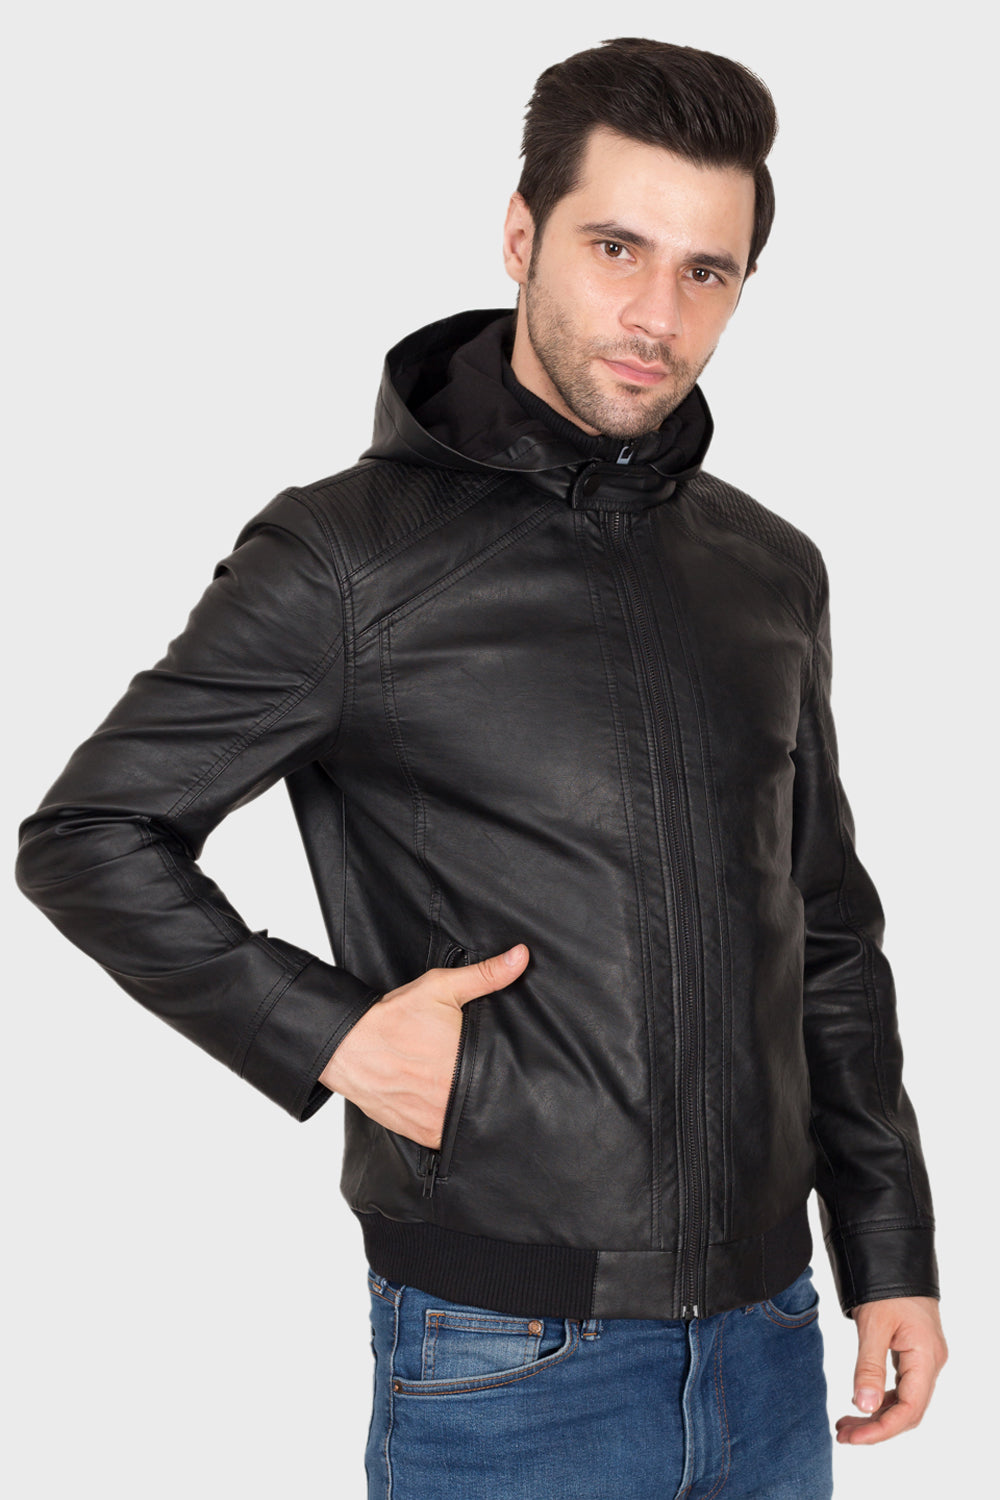 Justanned Black Hoodie Leather Jacket